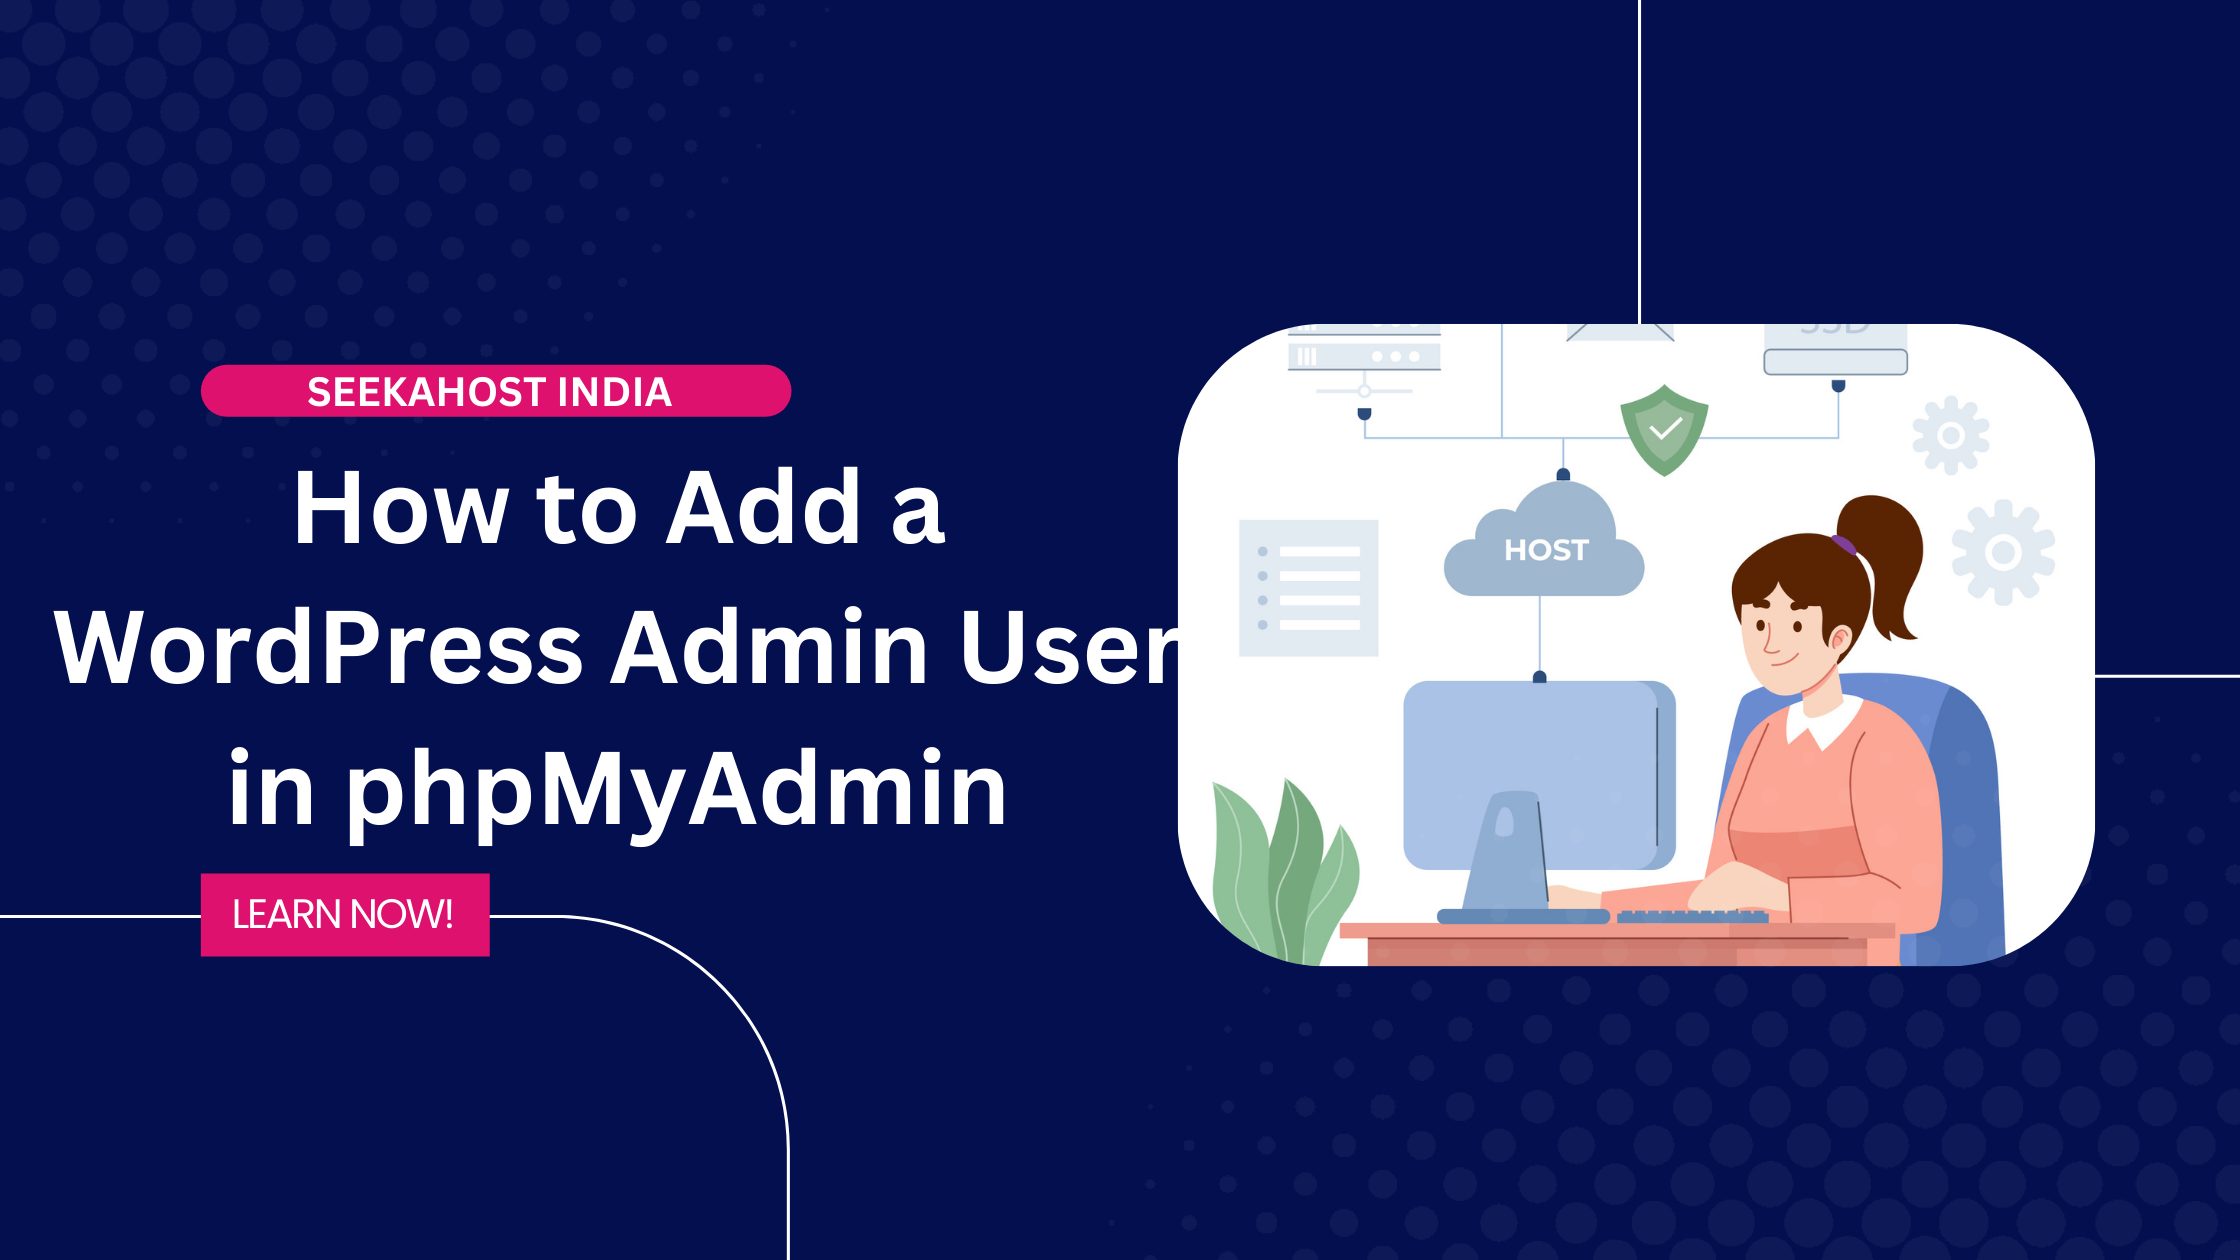 Add a WordPress Admin User in phpMyAdmin